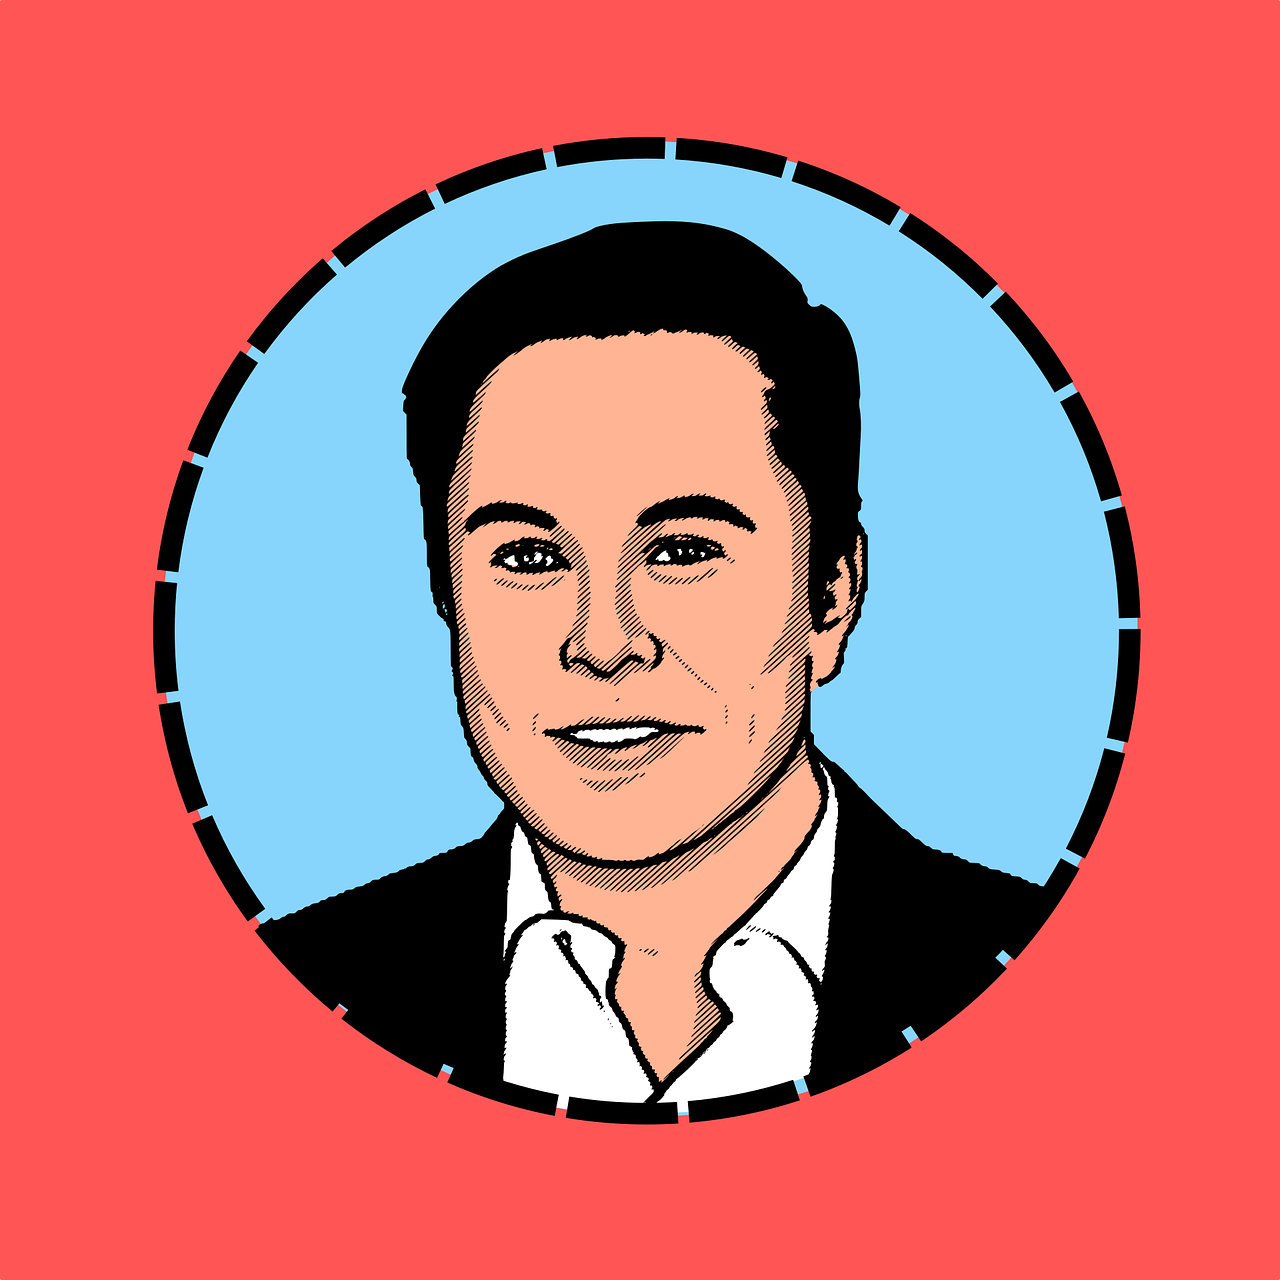 Elon Musk: visionário ou vilão?